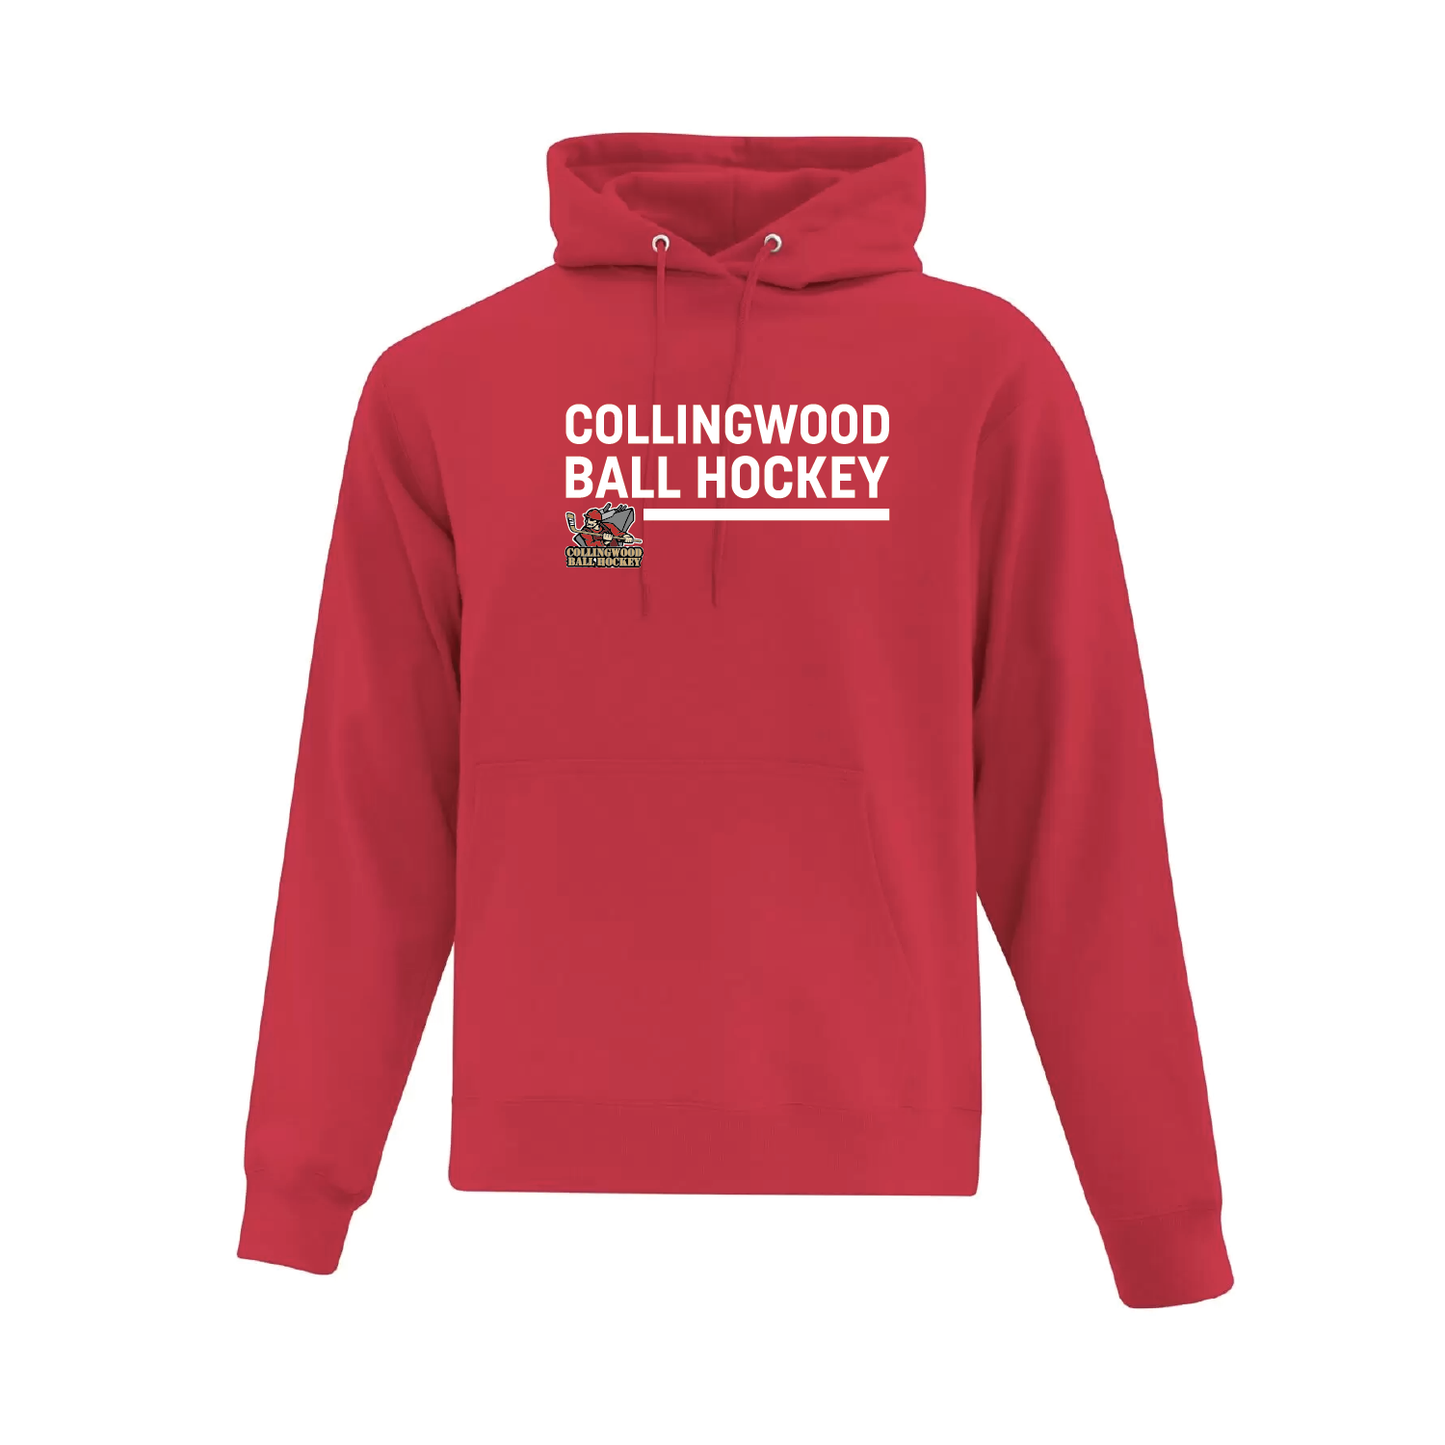 Collingwood Ball Hockey Hoody